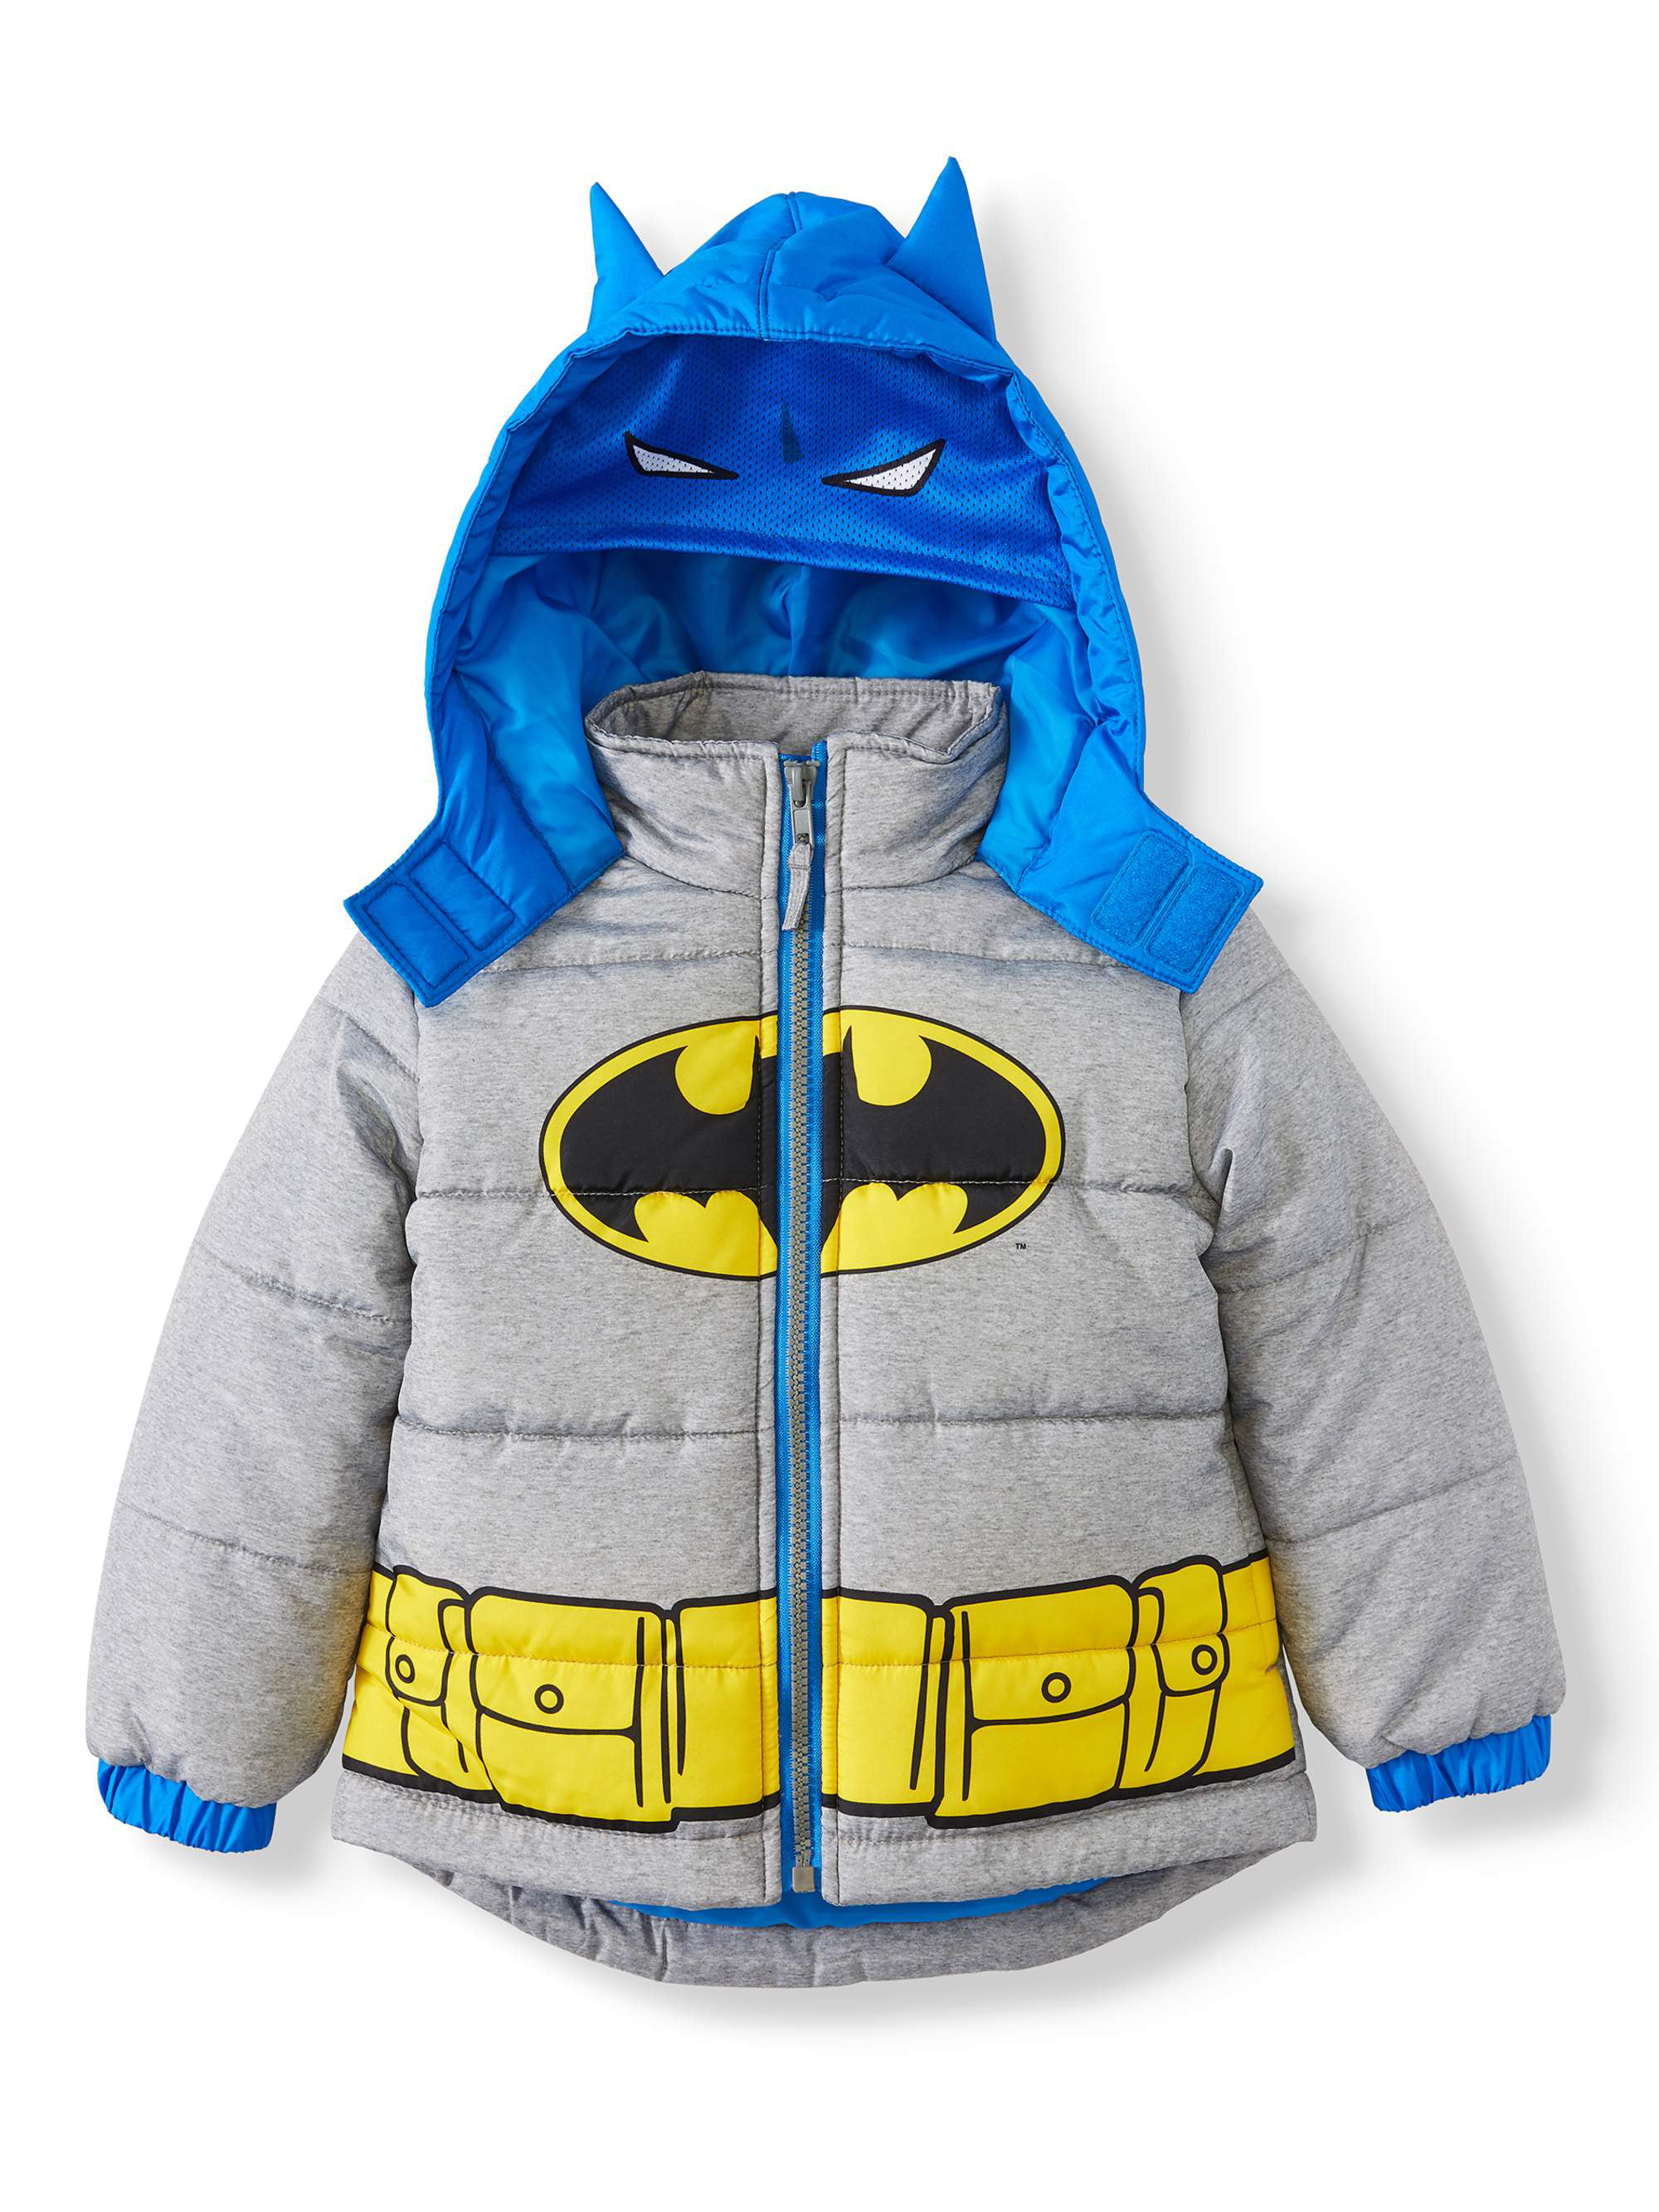 DC Comics Batman Toddler Boy Costume Winter Jacket Coat - Walmart.com